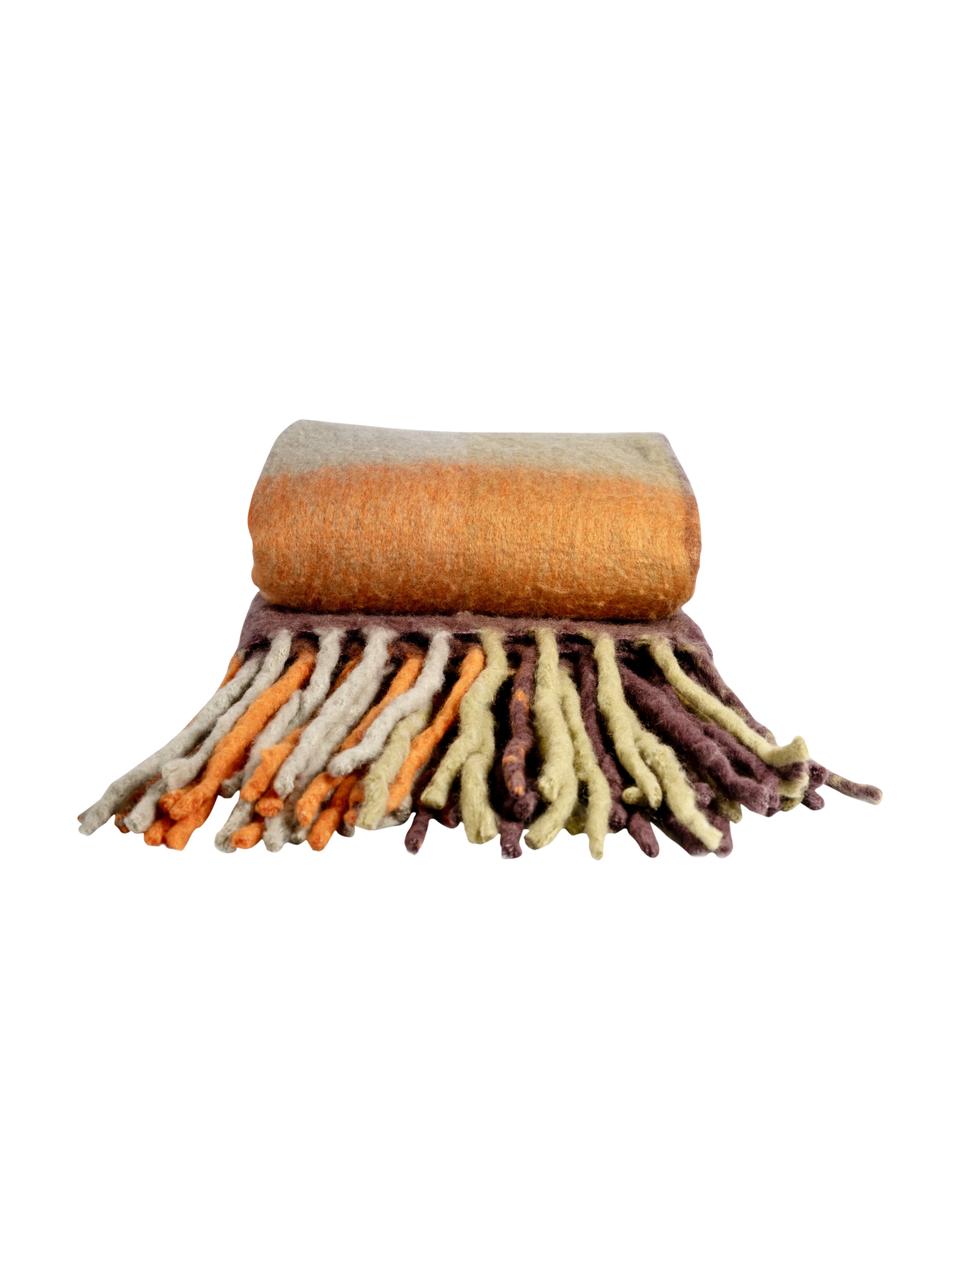 Wolldecke Check mit Fransen in Braun/Orange, 50% Wolle, 50% Acryl, Orange, Braun, 125 x 150 cm